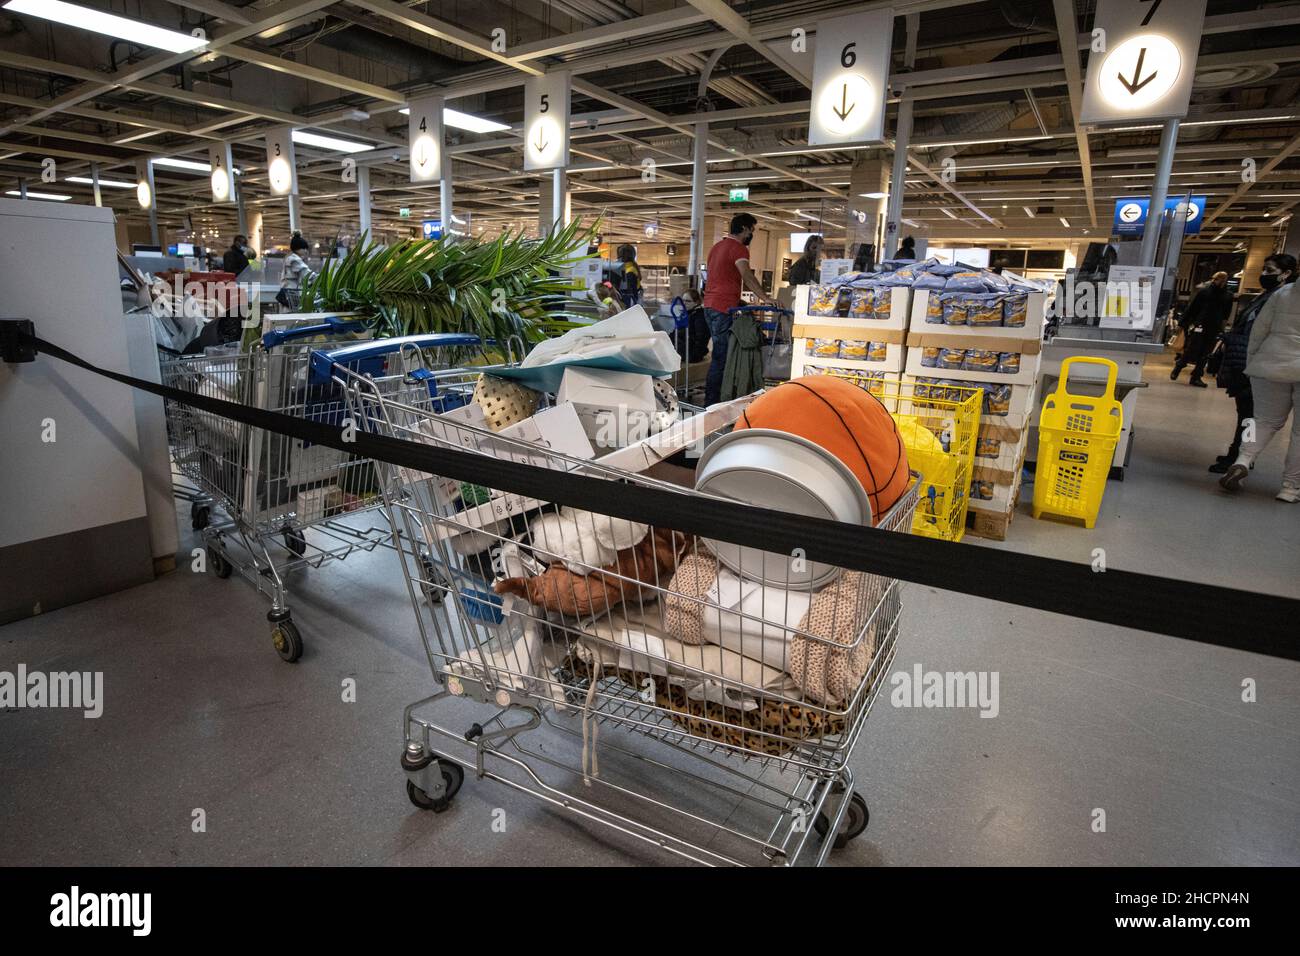 Un chariot de shoppers se trouve abandonné plein d'achats indésirables près des rangées de caisses dans un IKEA dans le sud de Londres, Angleterre, Royaume-Uni Banque D'Images